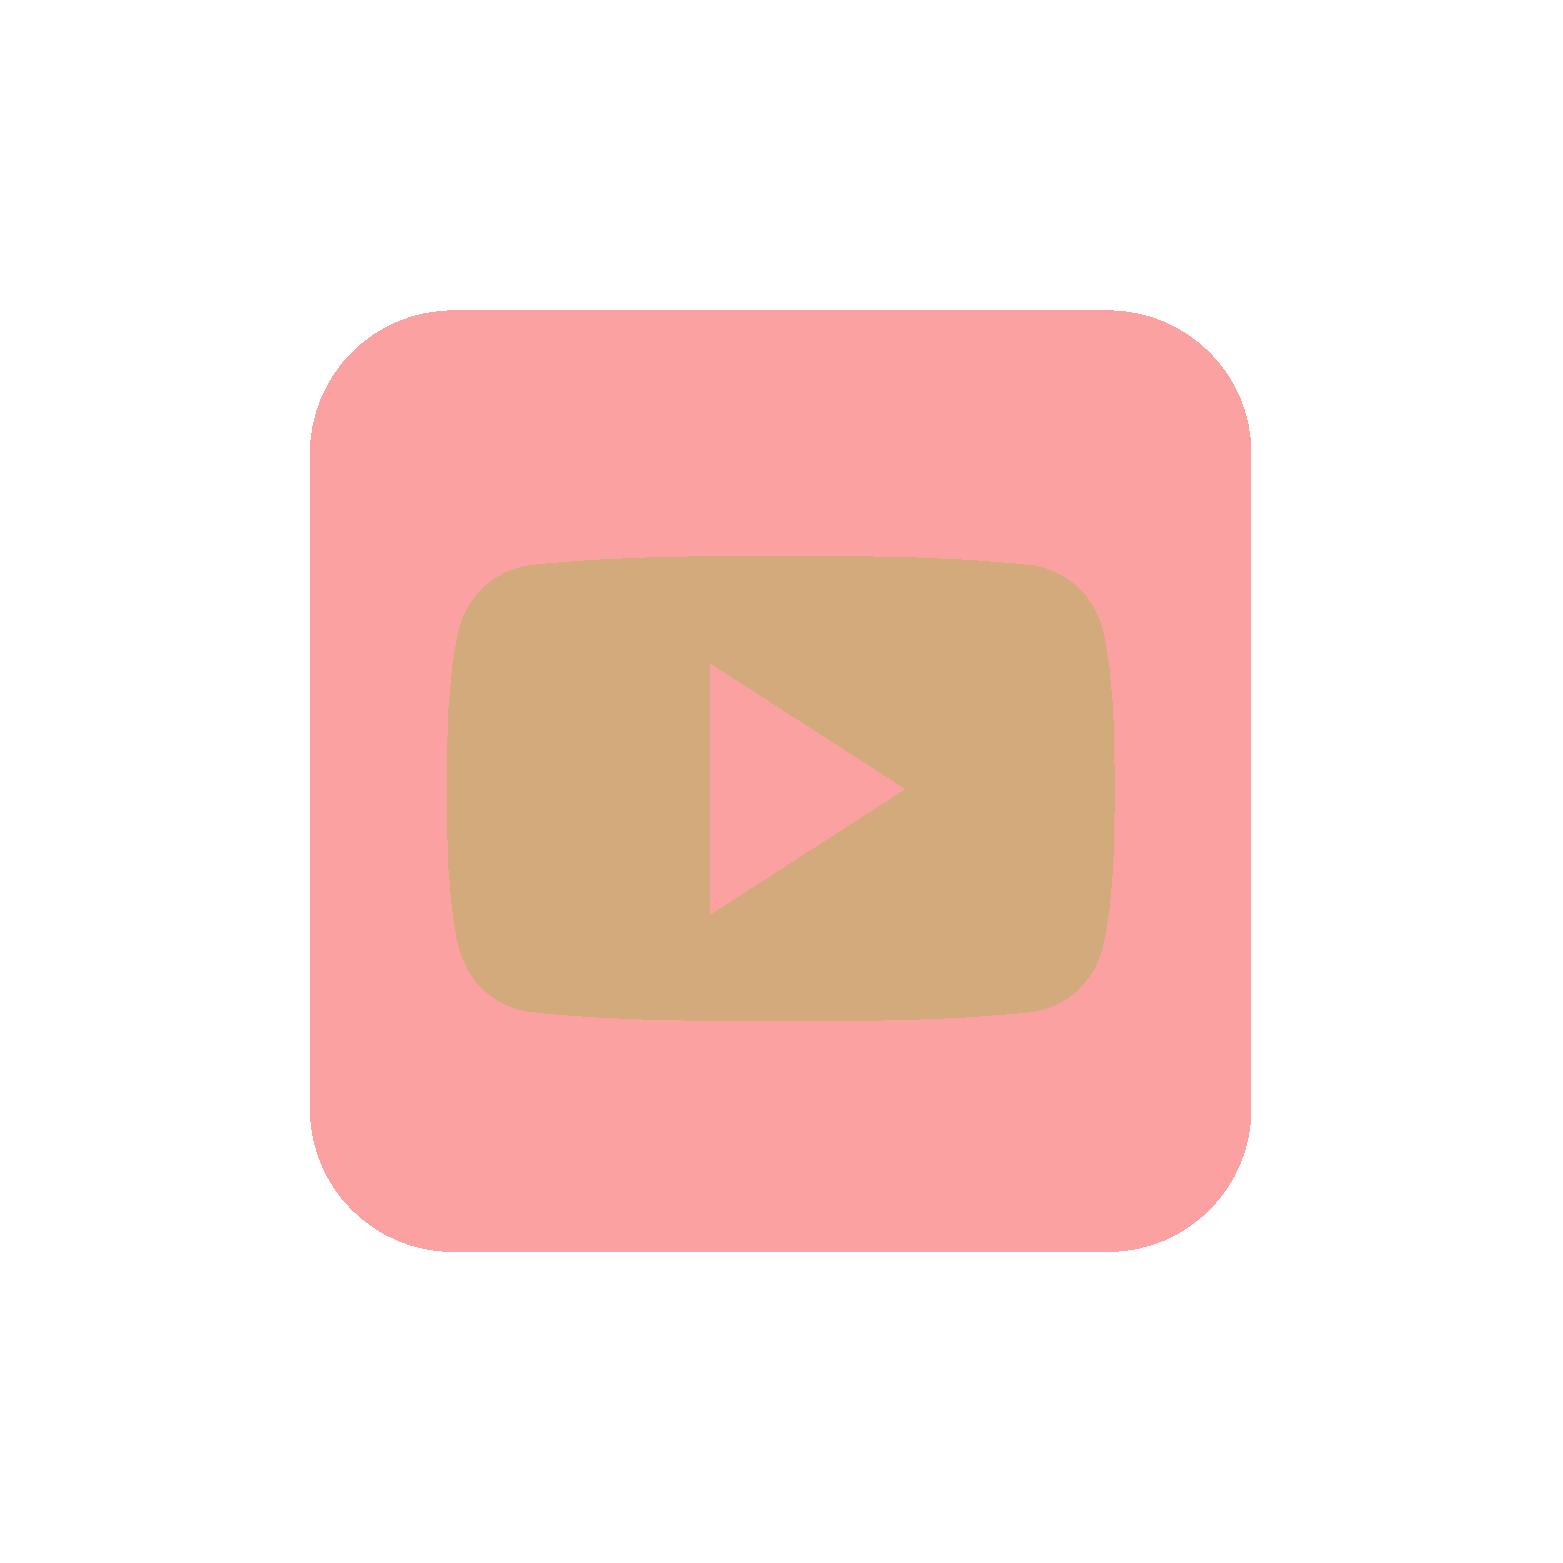 Fitur Live Streaming Youtube undangan pernikahan digital Elinvi